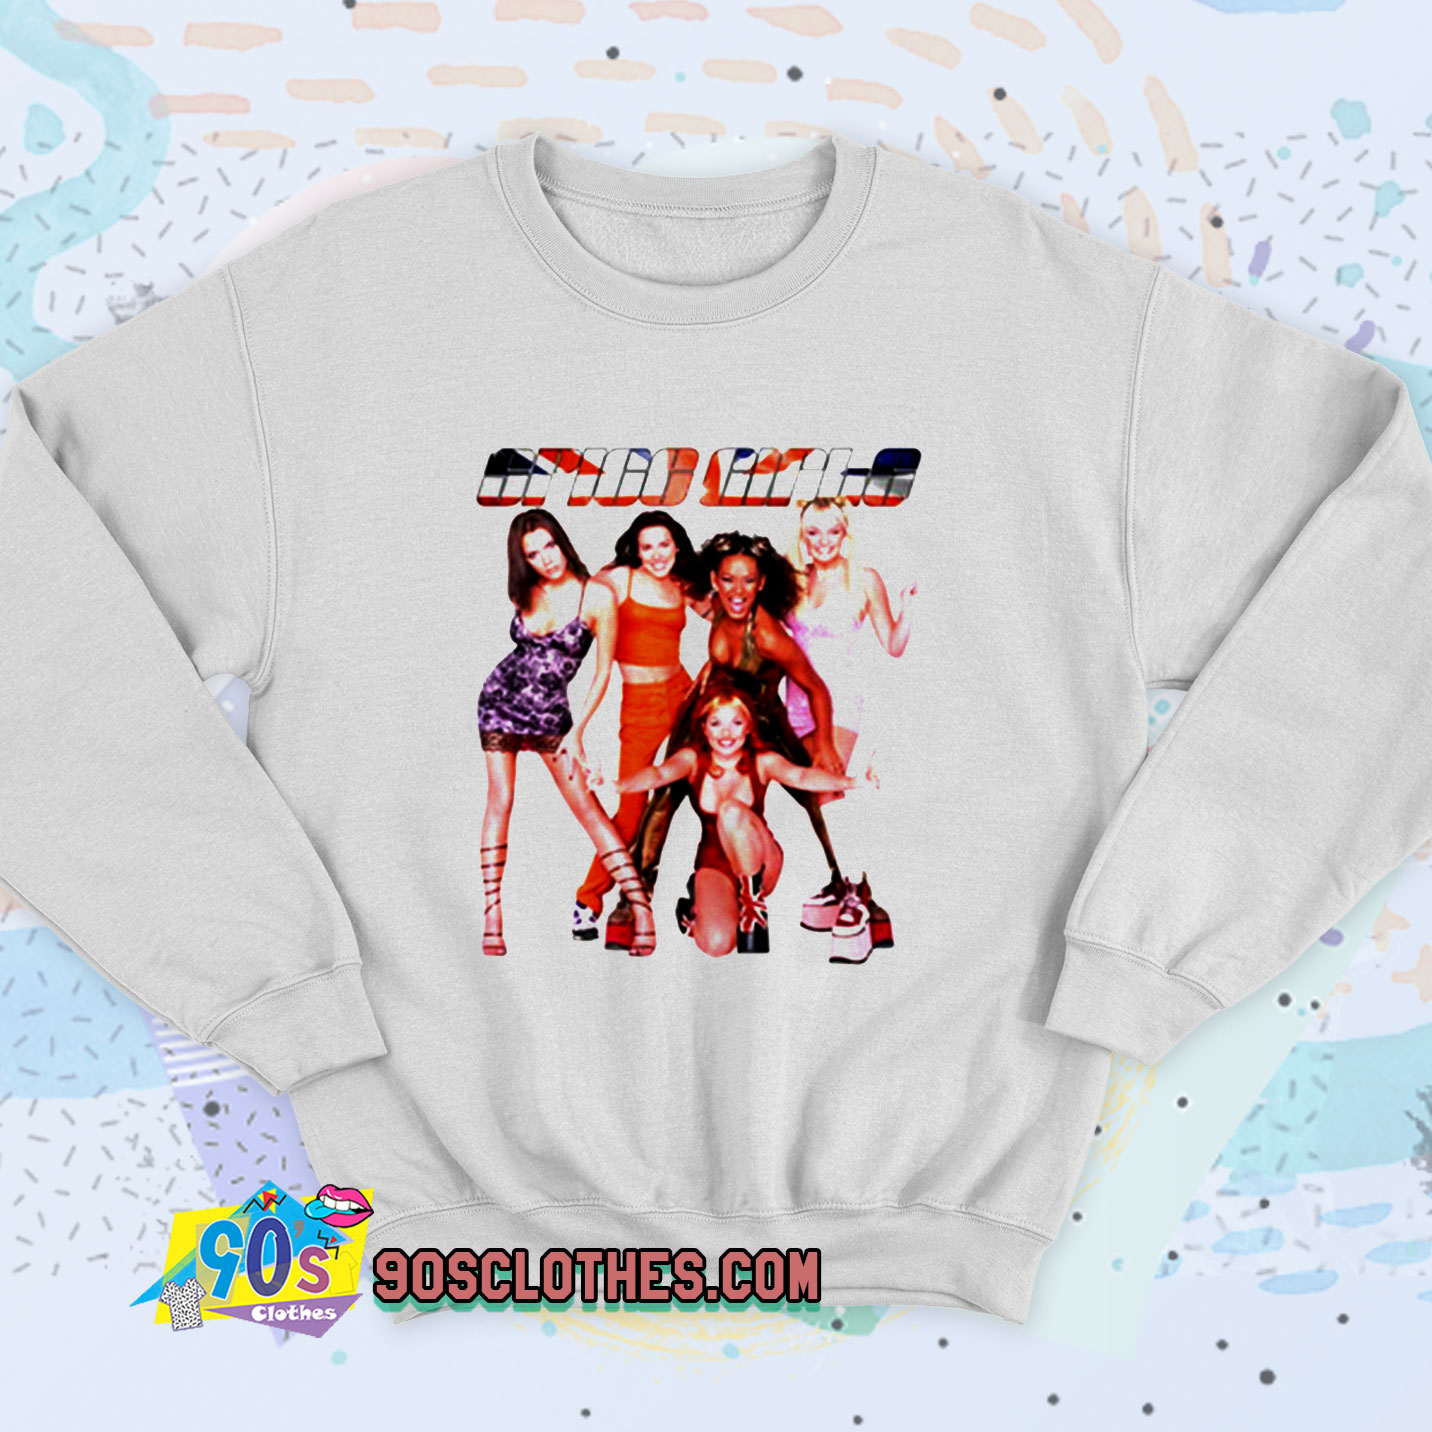 Spice Girls England Retro Sweatshirt - 90sclothes.com